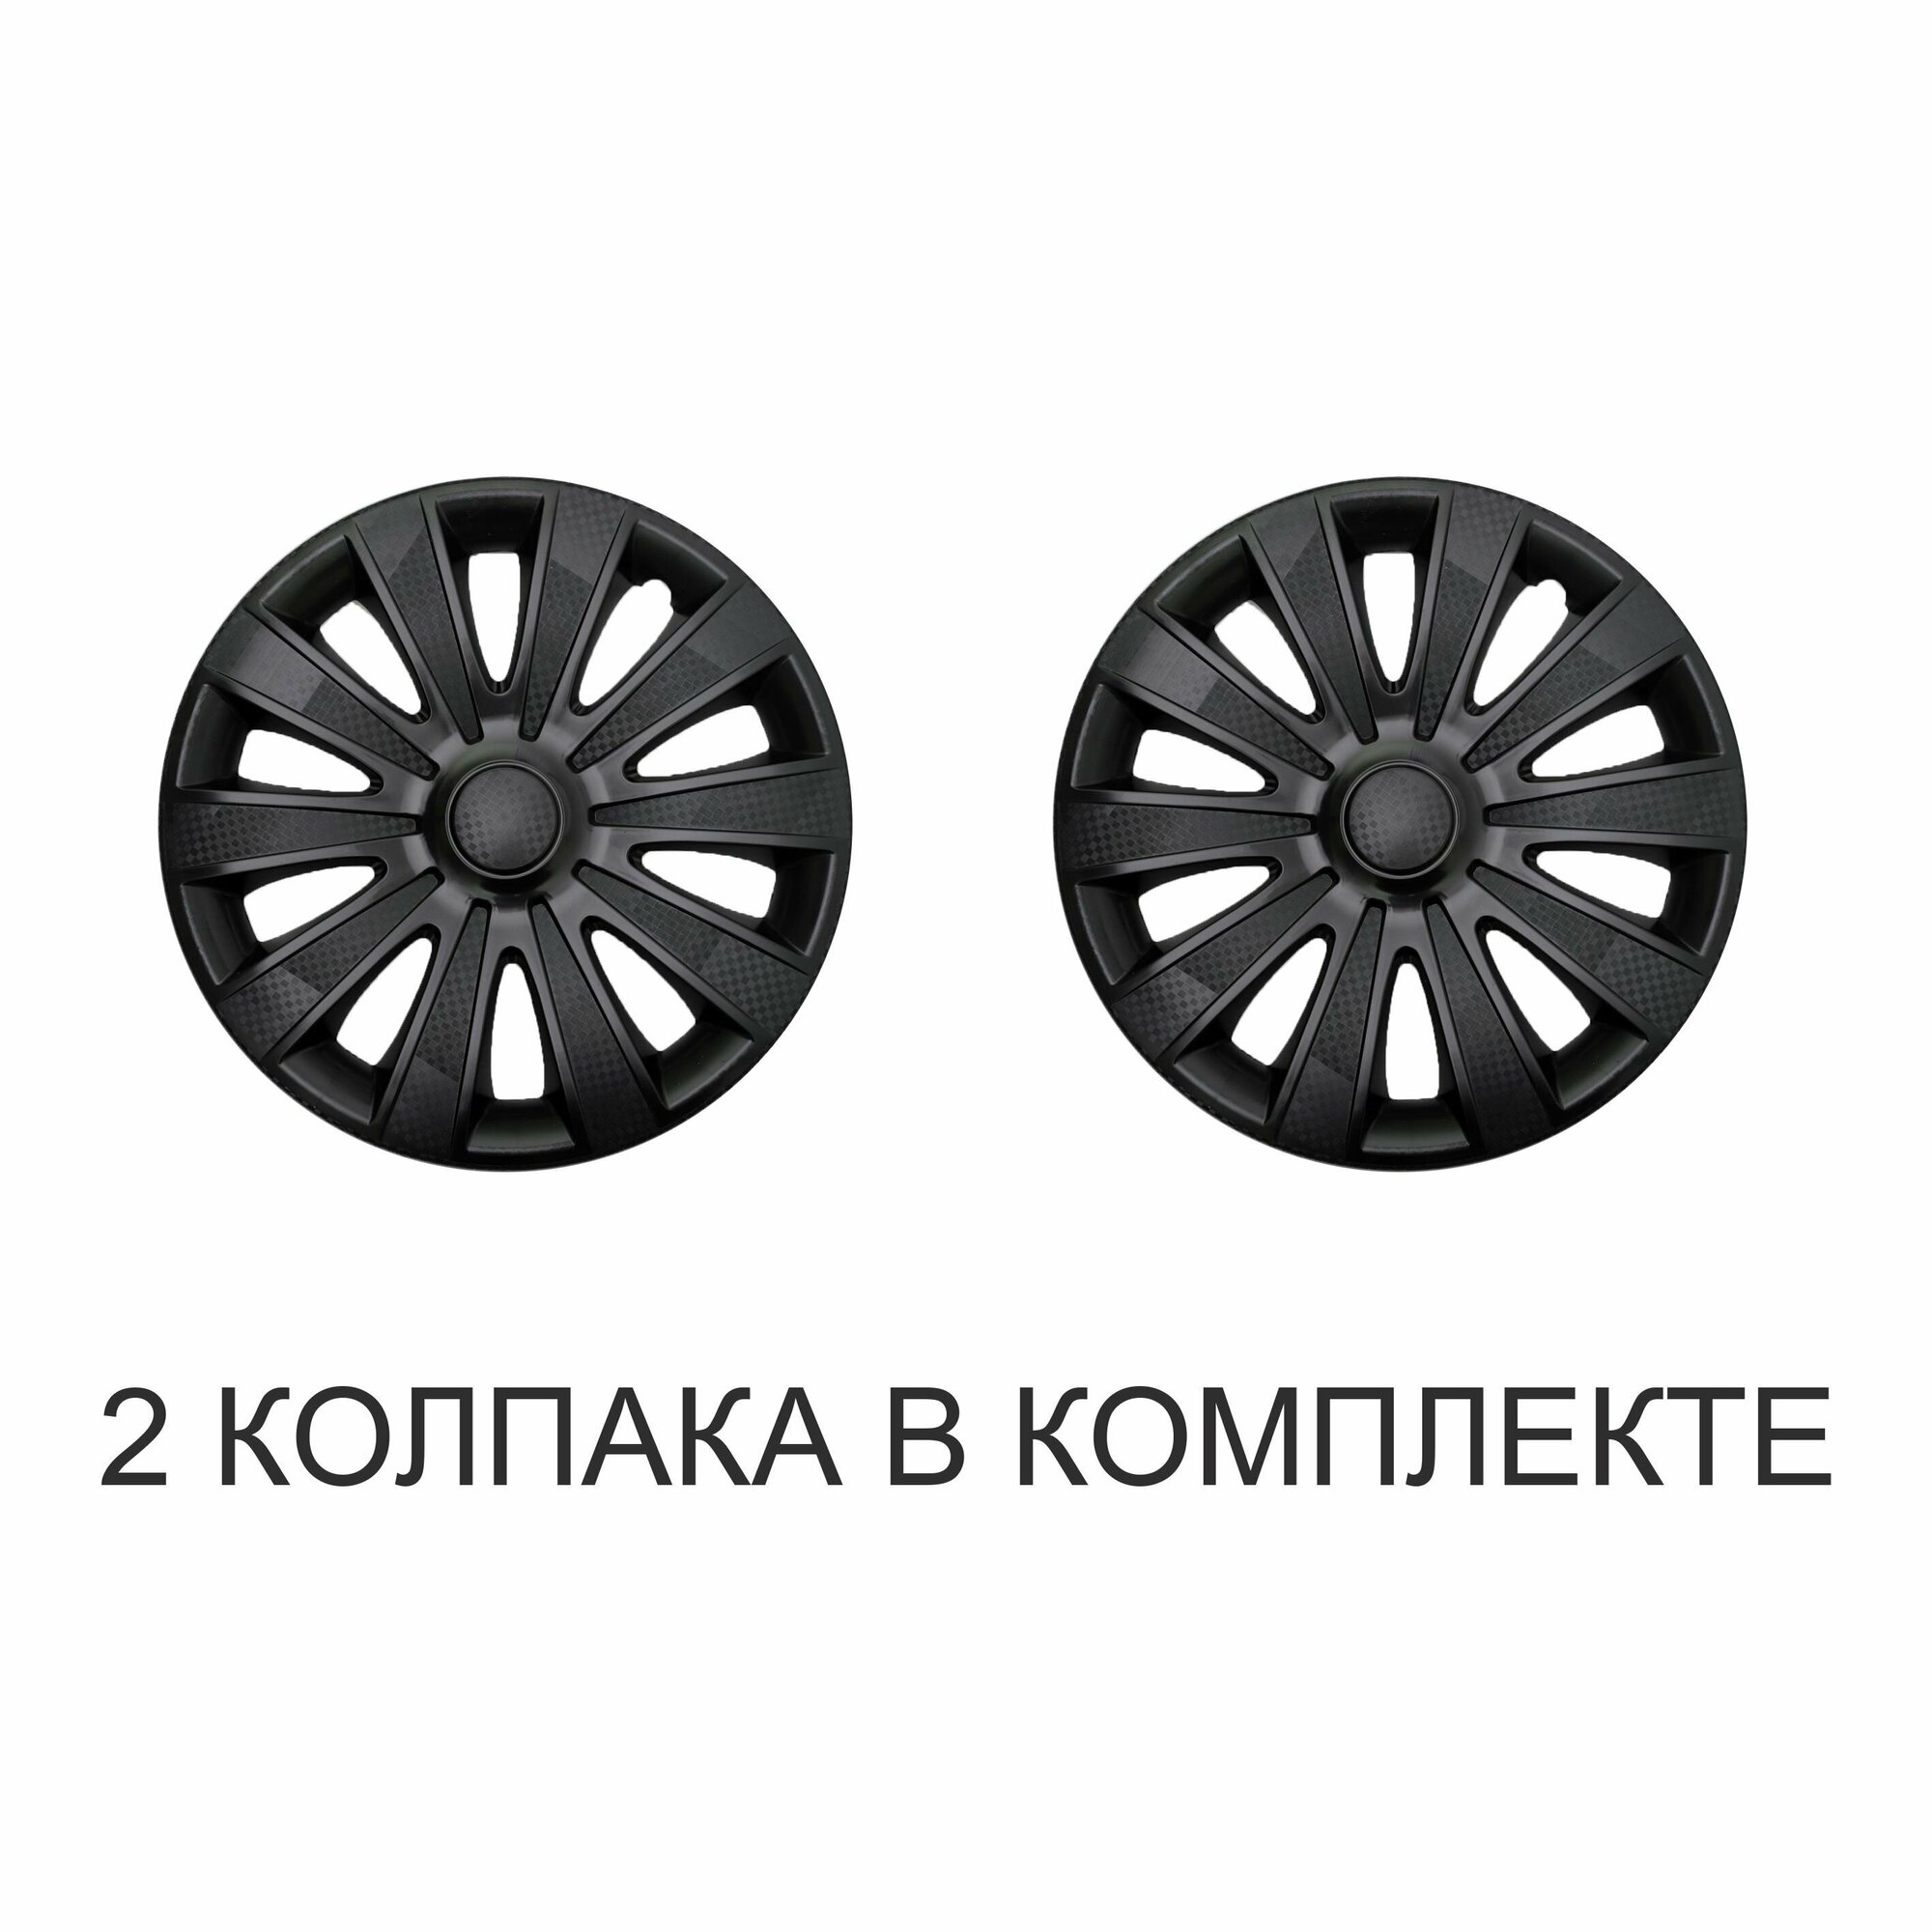 Колпаки на колеса STAR карат черный R15, комплект 2шт, на диски радиус 15, легковой авто, цвет чёрный, Black карбон